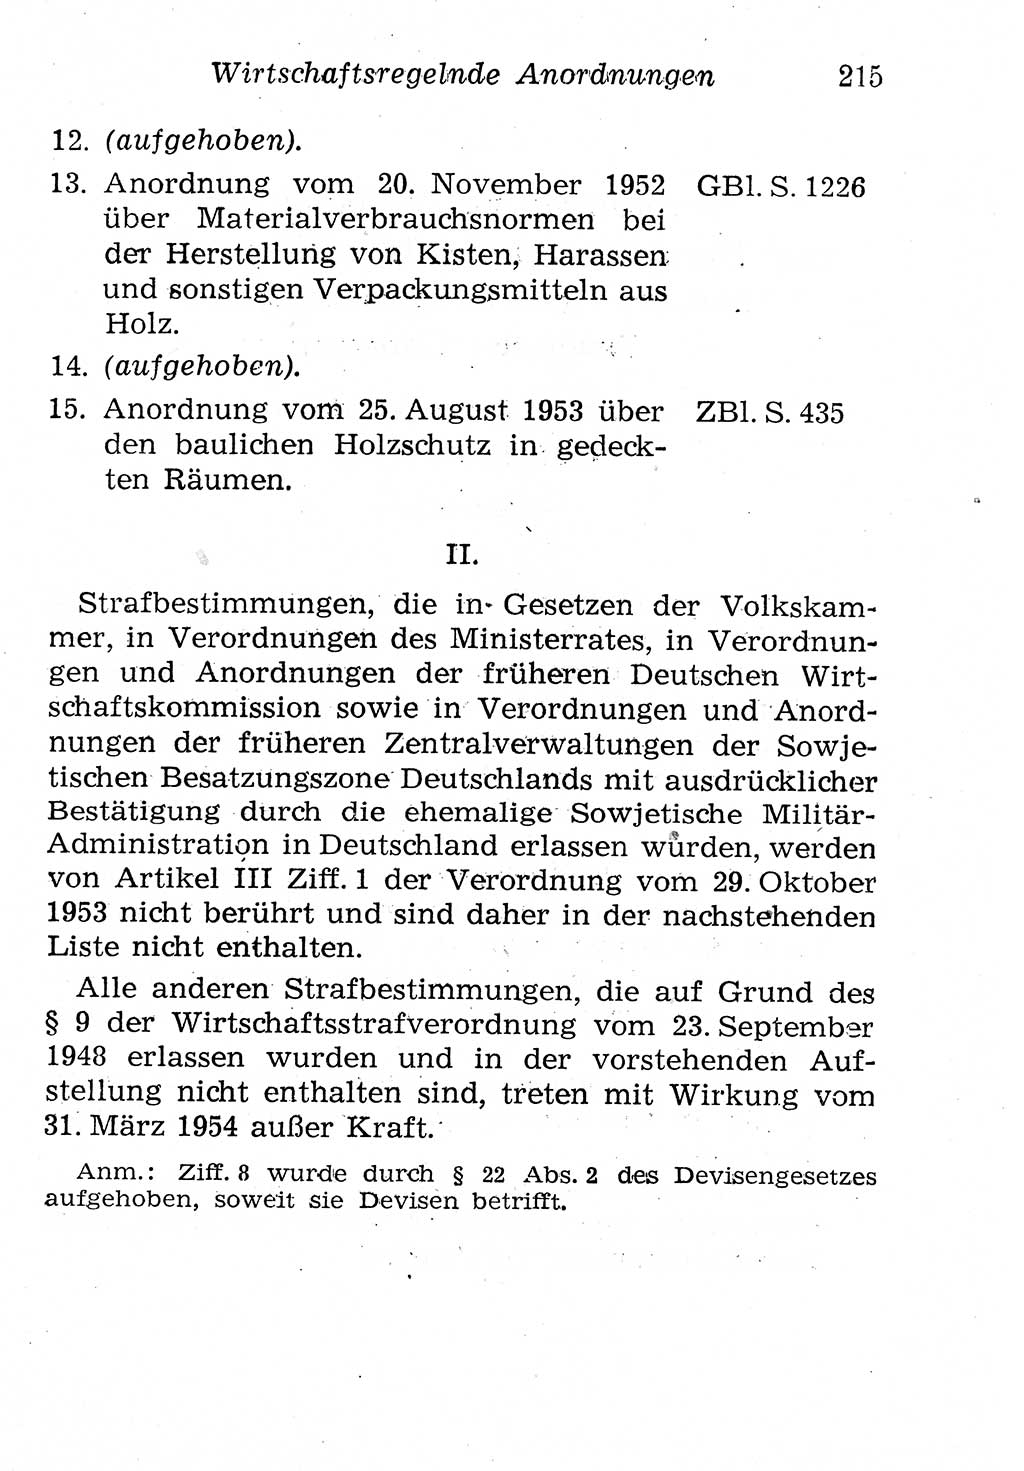 Strafgesetzbuch (StGB) und andere Strafgesetze [Deutsche Demokratische Republik (DDR)] 1958, Seite 215 (StGB Strafges. DDR 1958, S. 215)